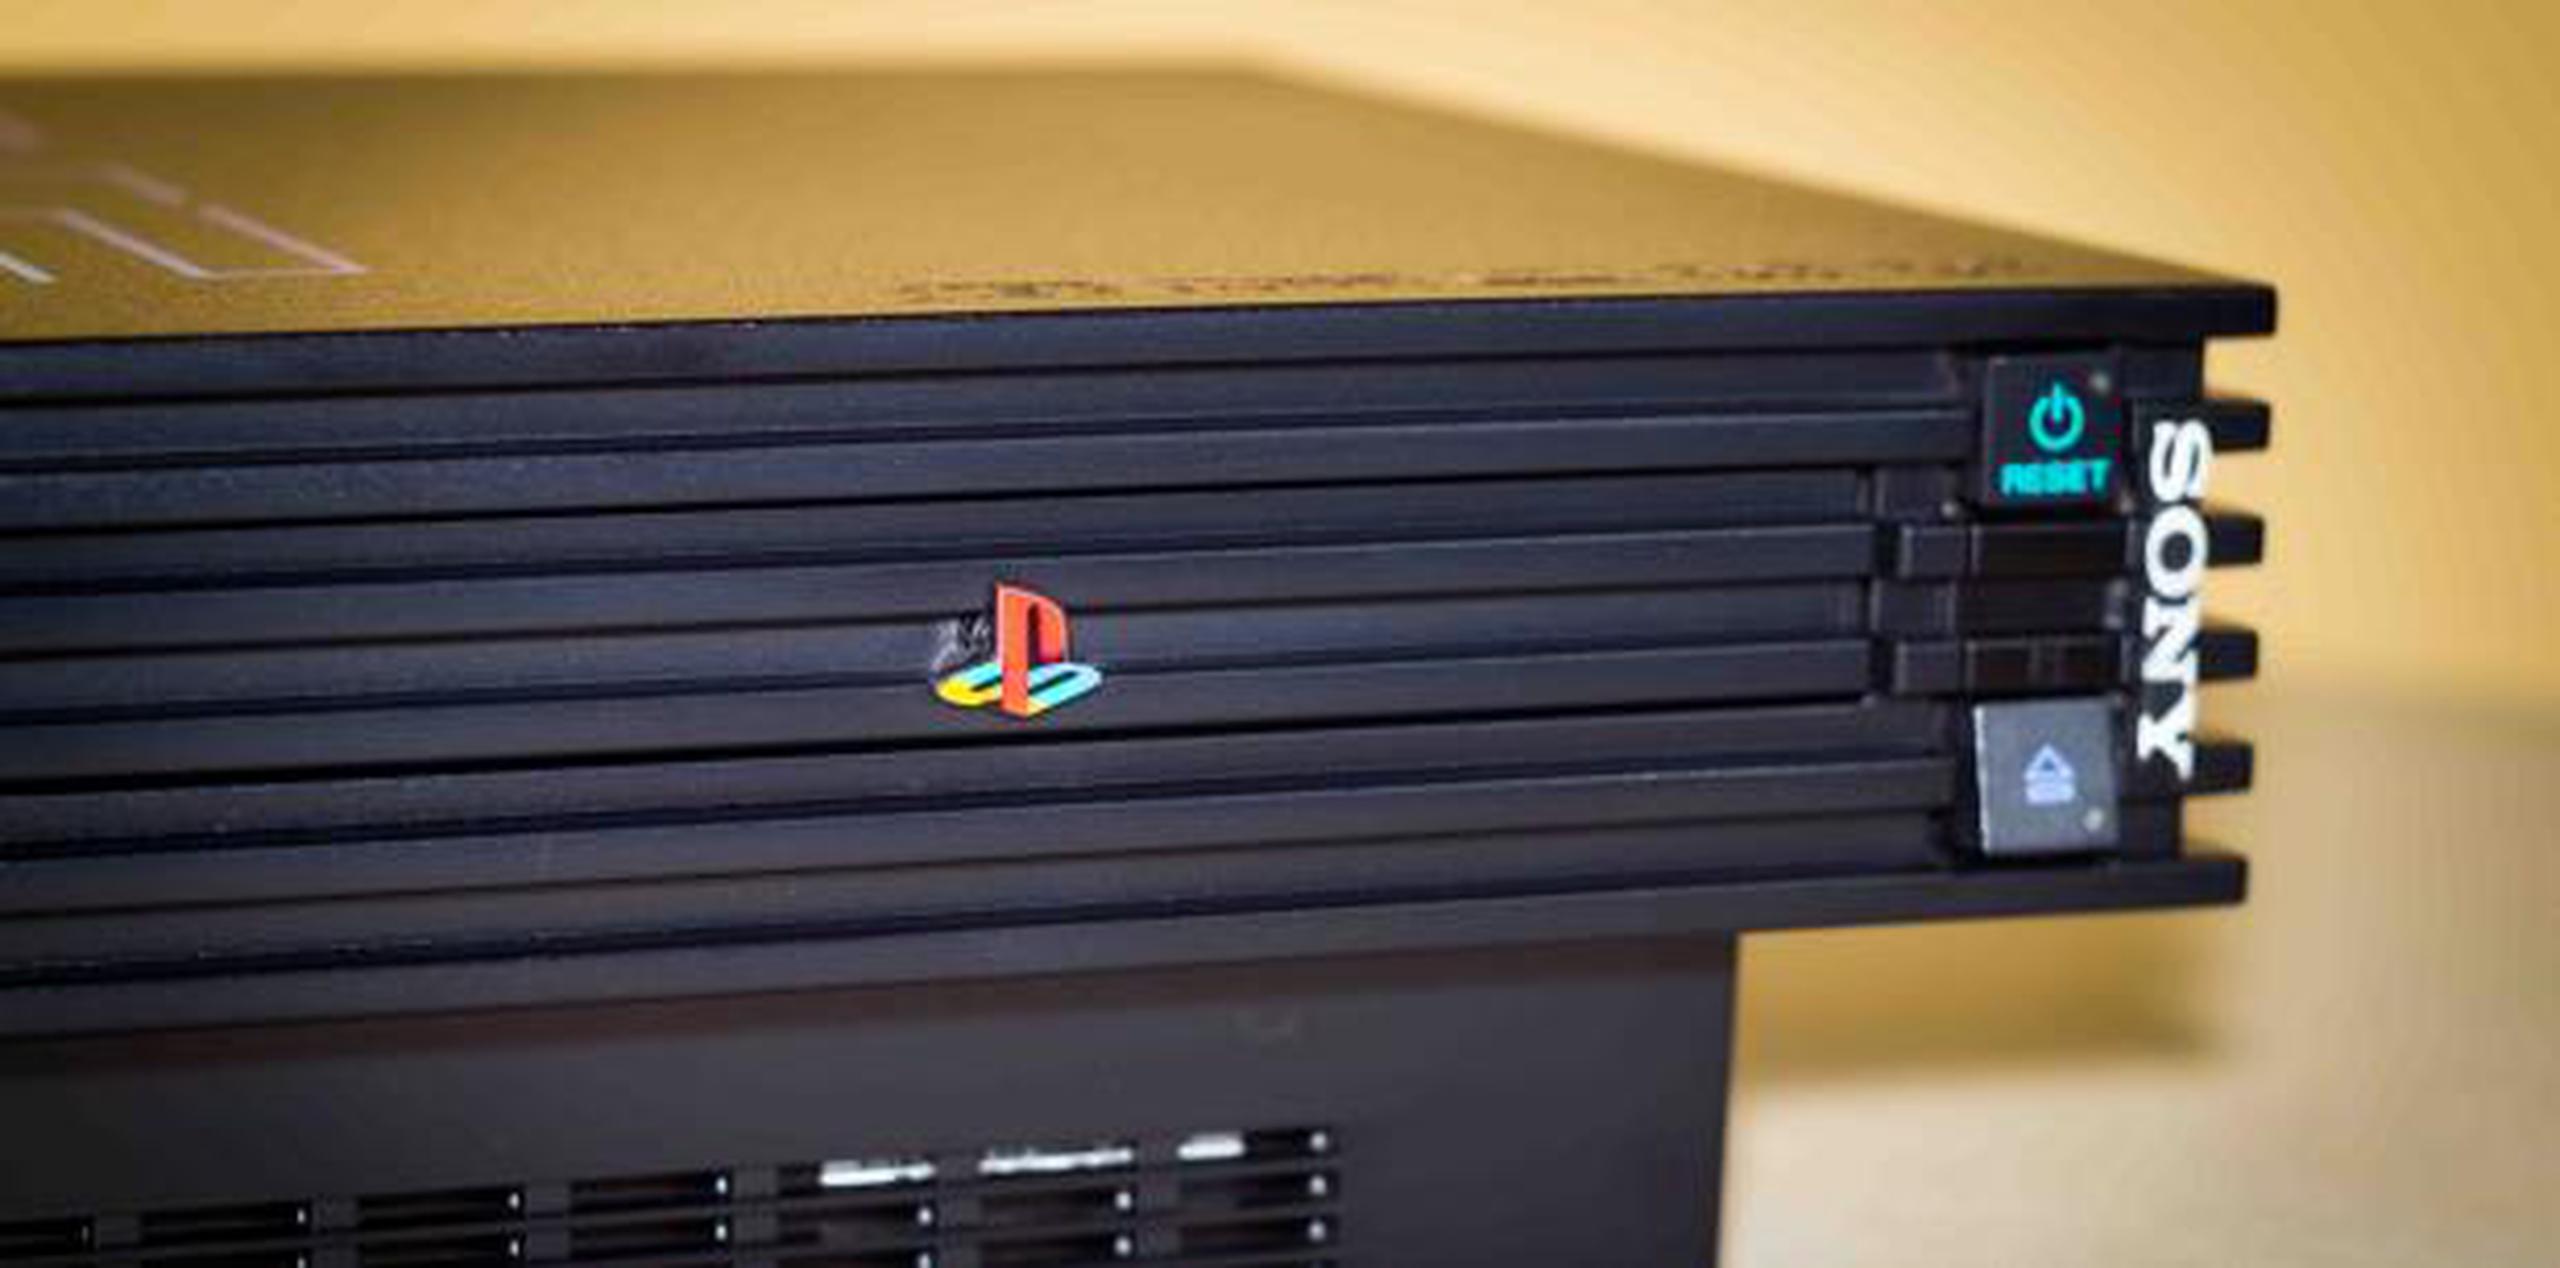 El PlayStation 2 actualmente es la consola más vendida de la historia. (Shutterstock)